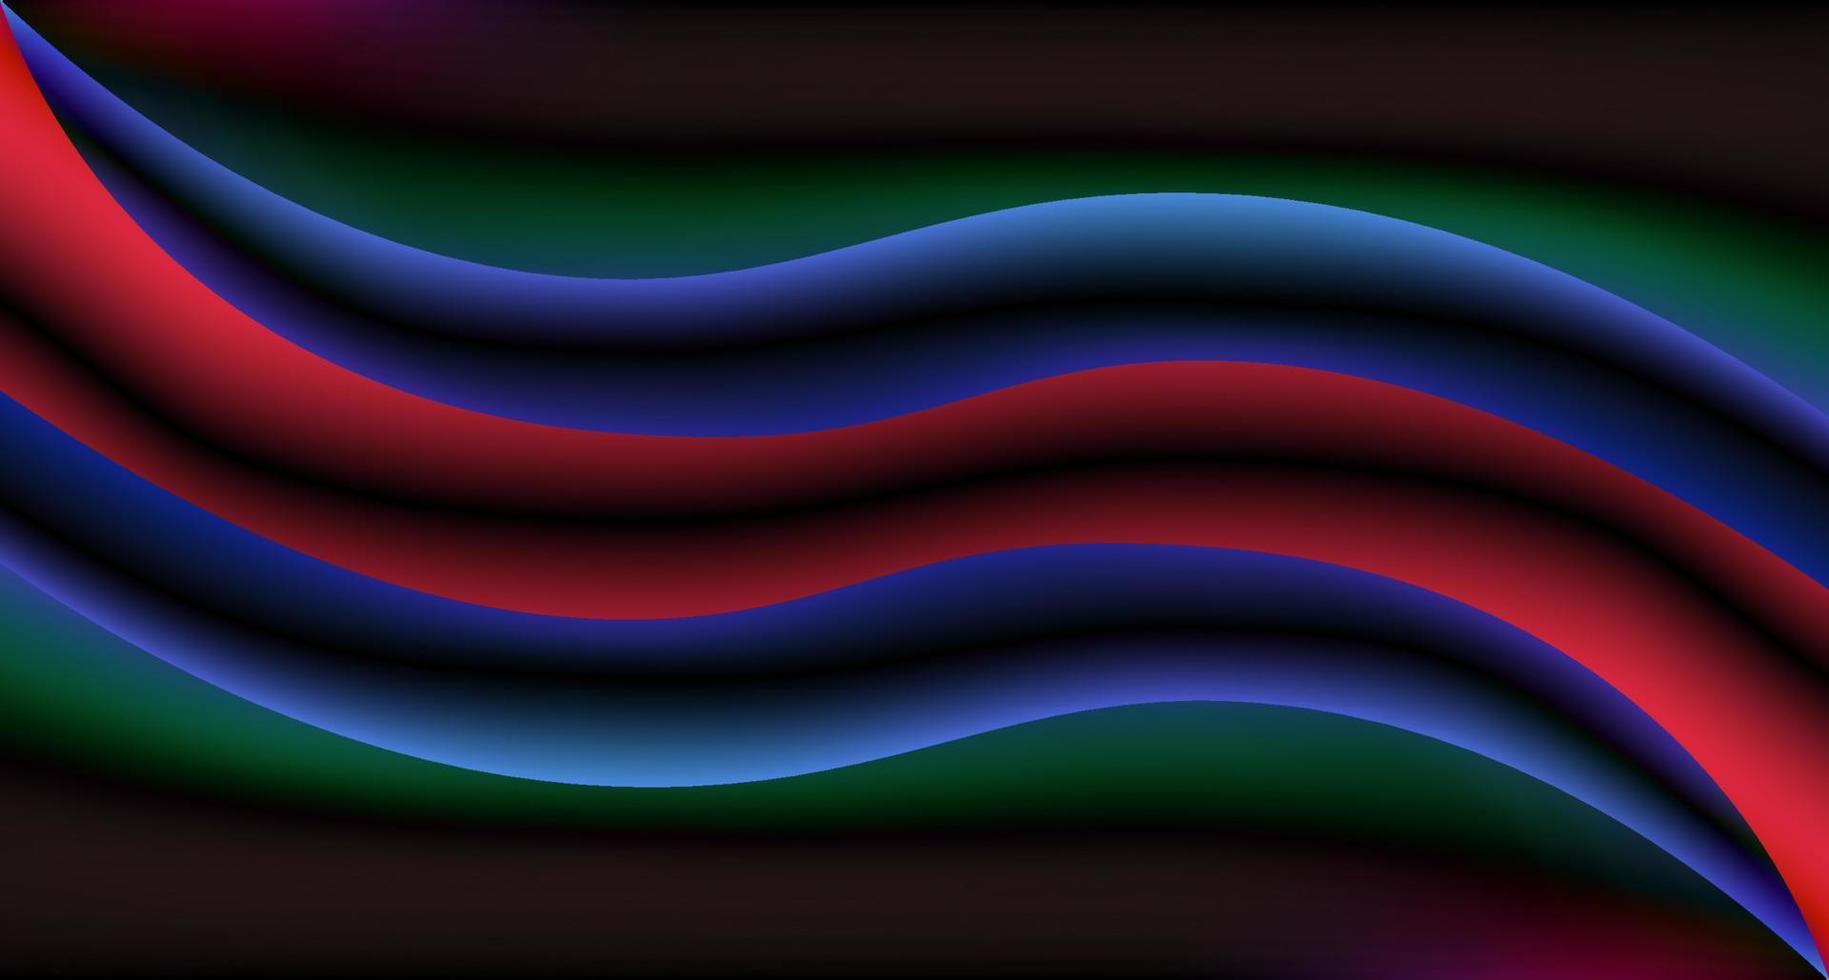 dunkle welle mit rot-blauem verlaufslichteffekt. retro futuristische flüssige neonfarbe. abstrakte Hintergrunddesignvorlage für Tapete, Banner, Poster, Cover, Flyer, Präsentation, Werbung usw vektor